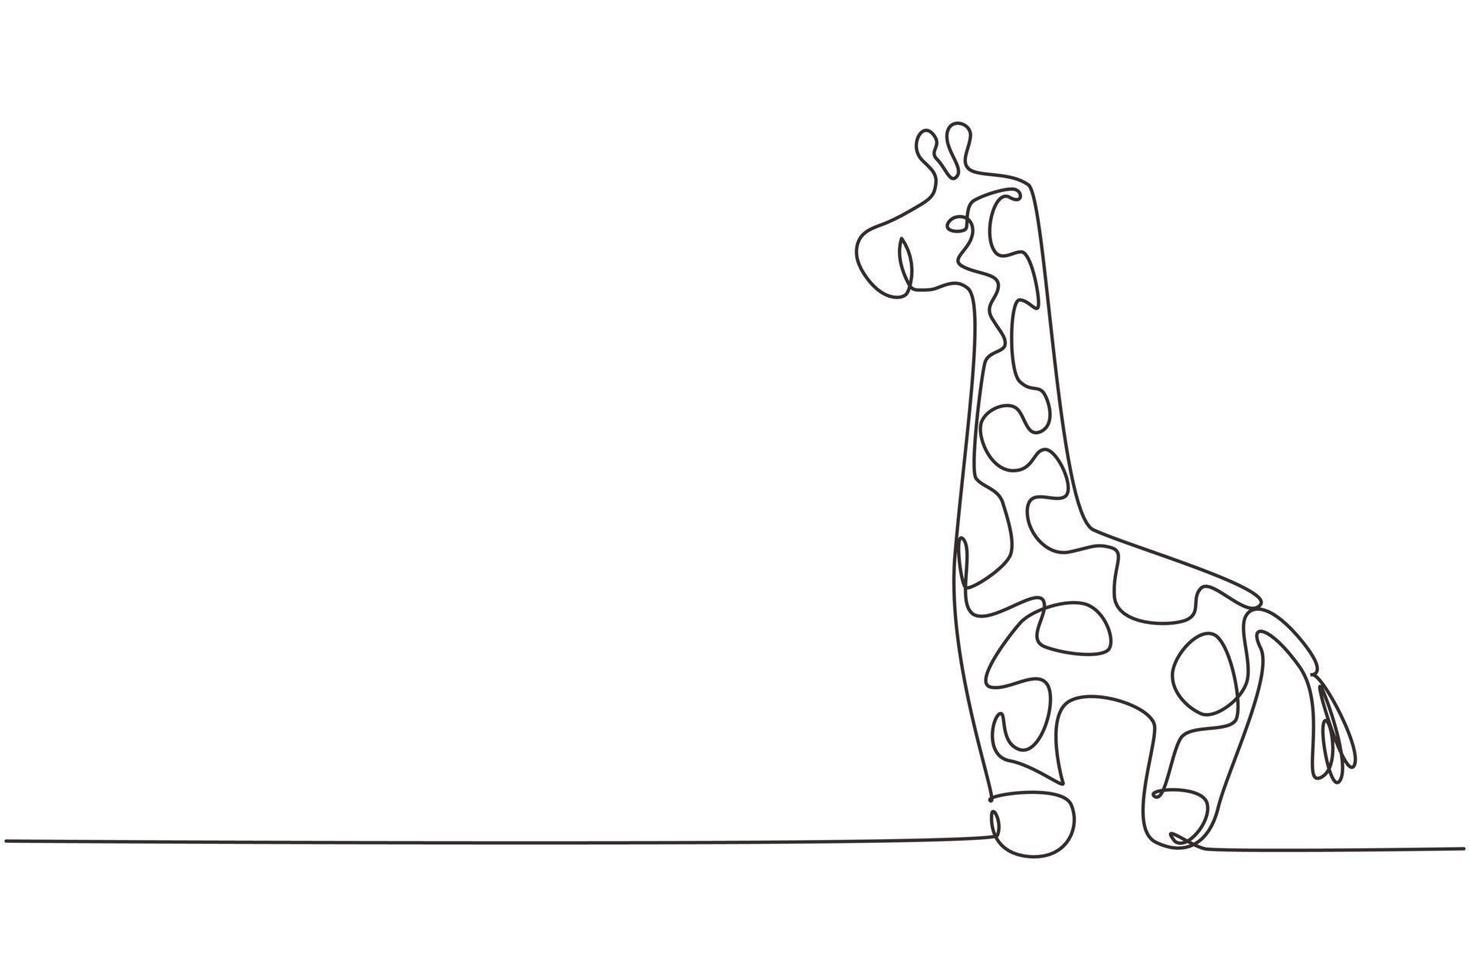 única linha contínua desenhando uma linda boneca de pelúcia girafa. fantoche de pelúcia girafa. brinquedo girafa de pelúcia. brinquedos de girafa amarela para crianças. ilustração em vetor design gráfico de desenho gráfico de uma linha dinâmica